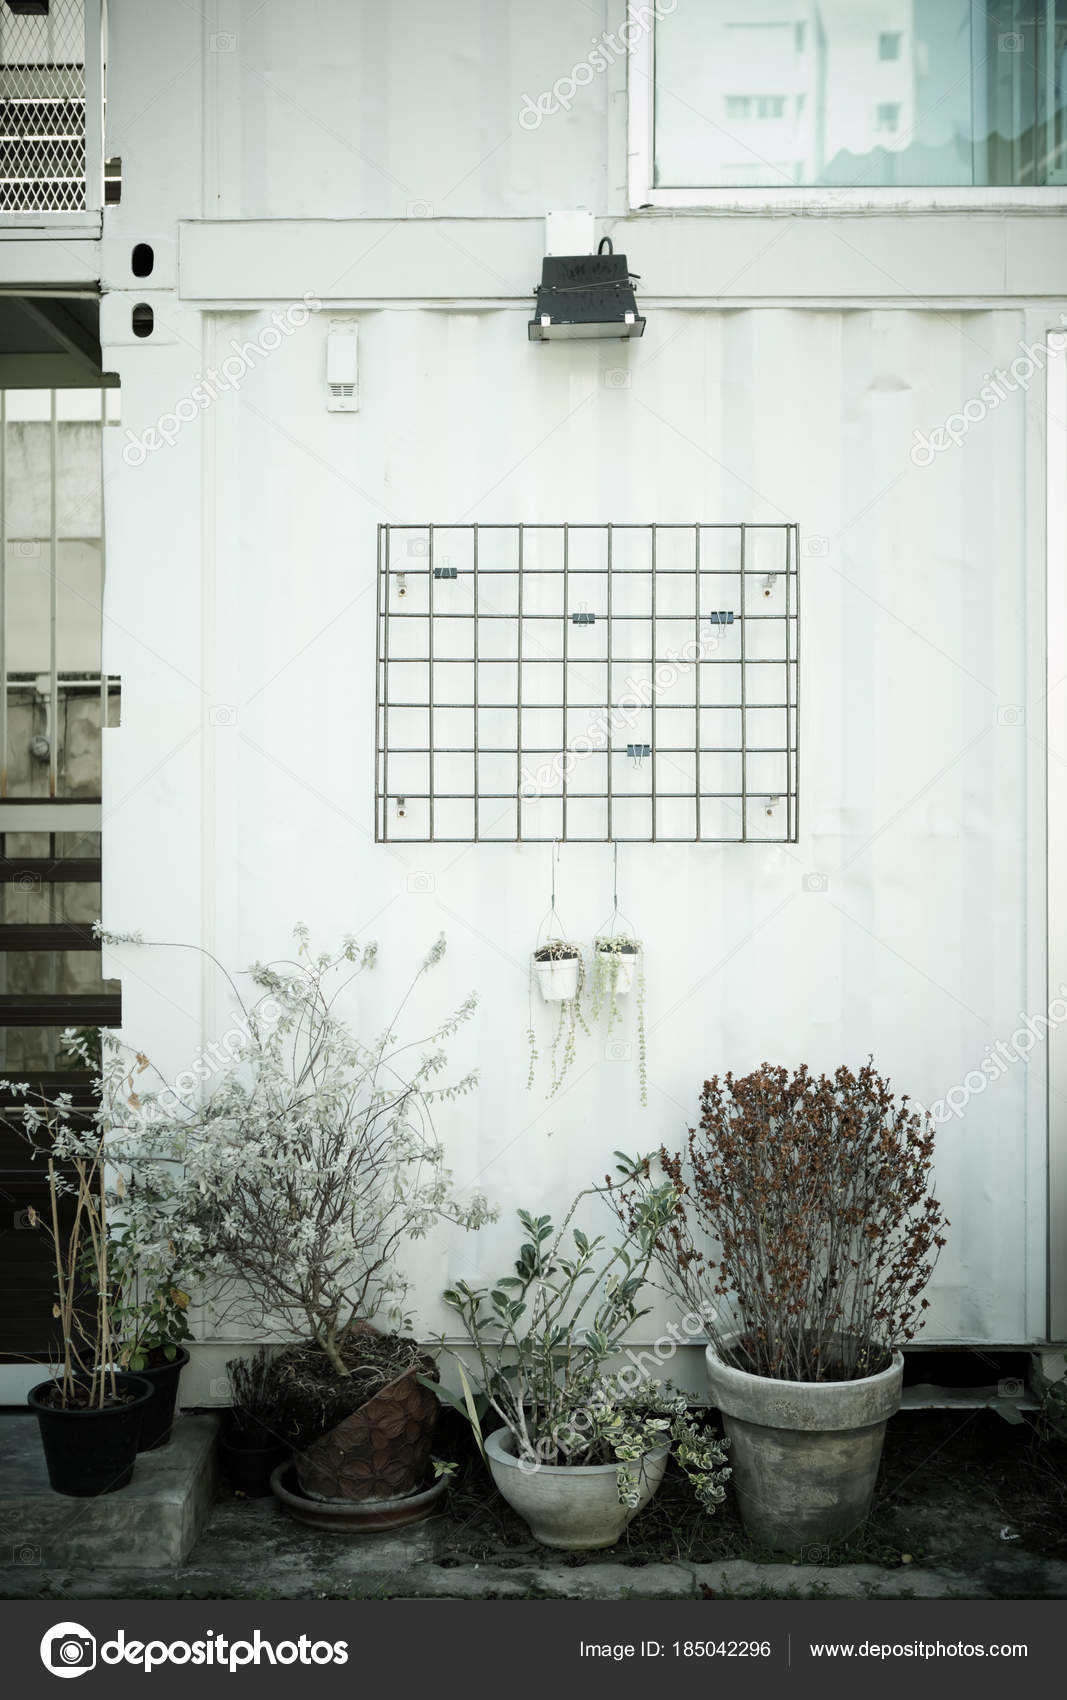 Conner de Casa contenedor blanco — Foto de stock © siva_ontherock